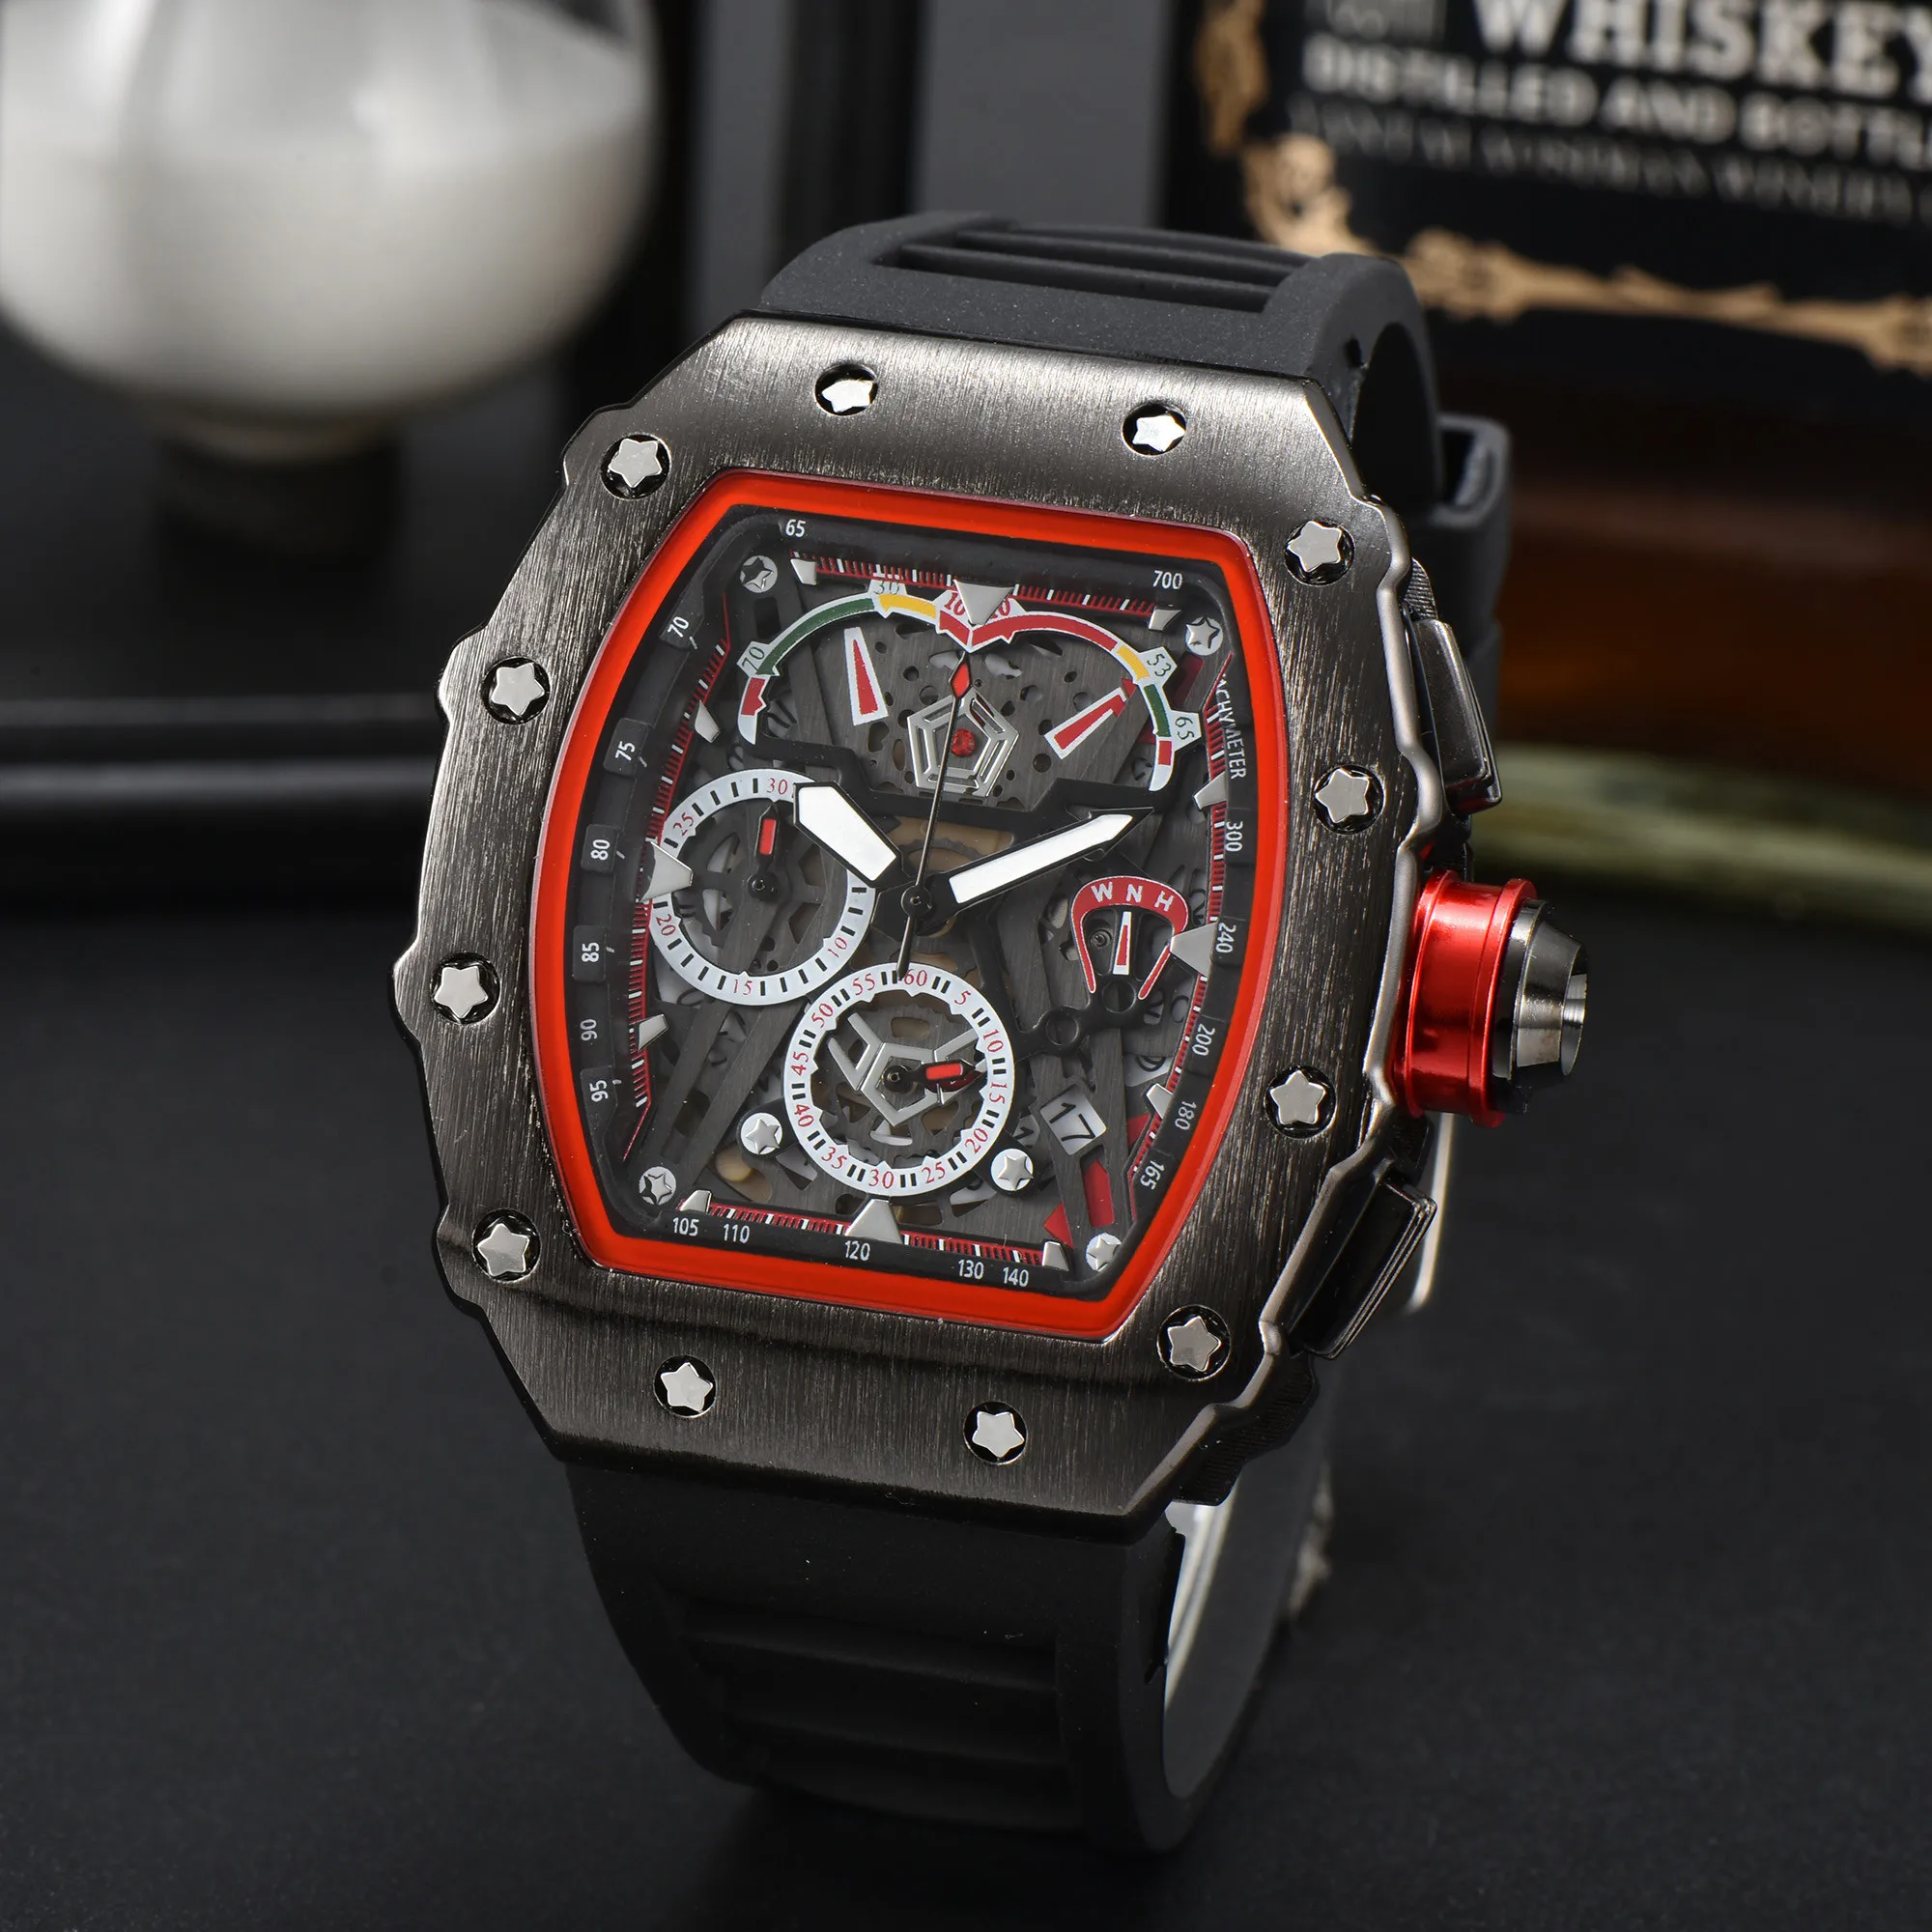 

Часы RCD09 мужские с хронографом, многофункциональные классические стальные брендовые, в деловом стиле, ААА